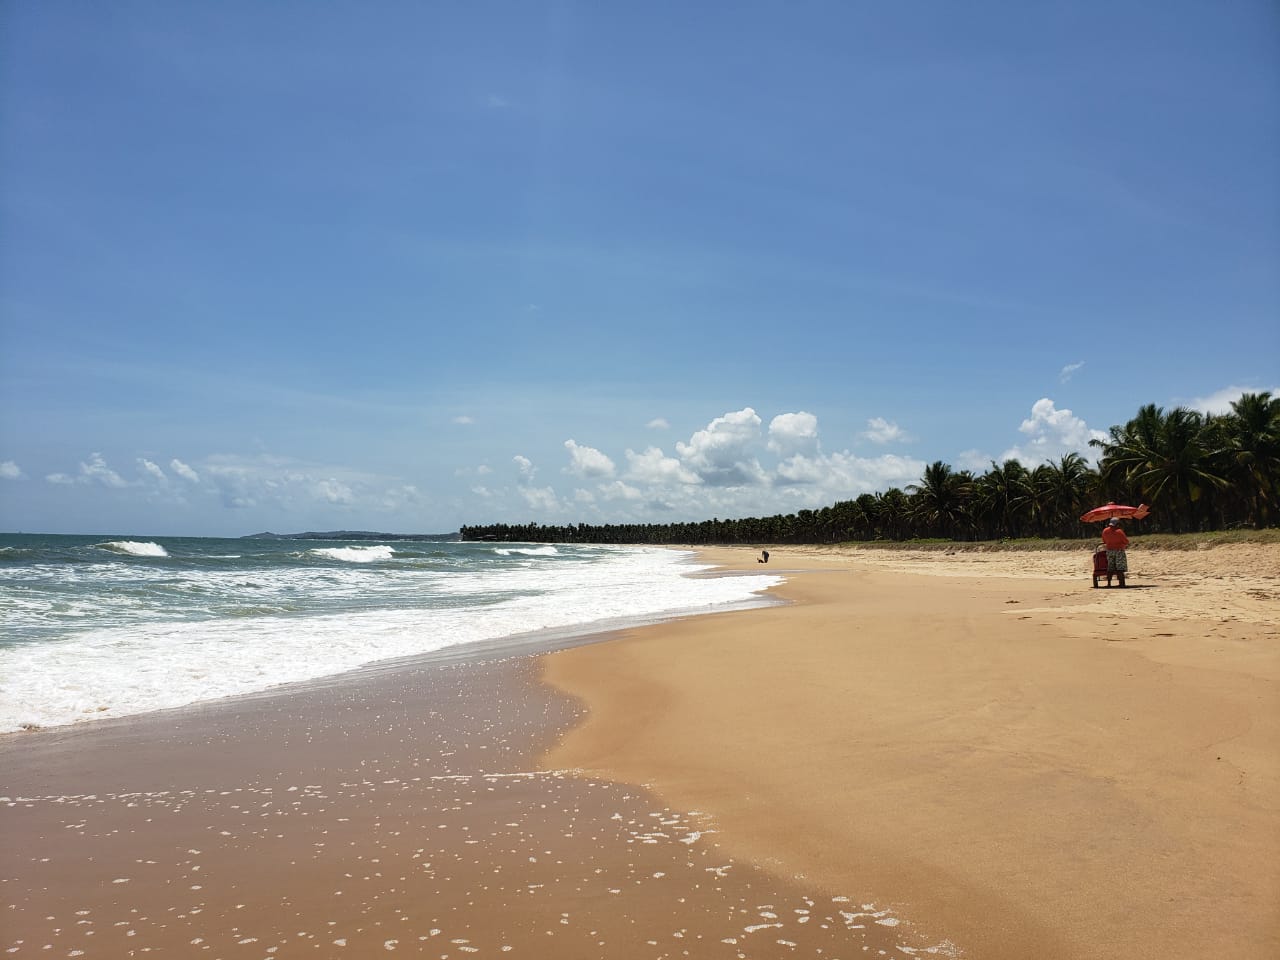 Gaibu Plajı'in fotoğrafı parlak ince kum yüzey ile